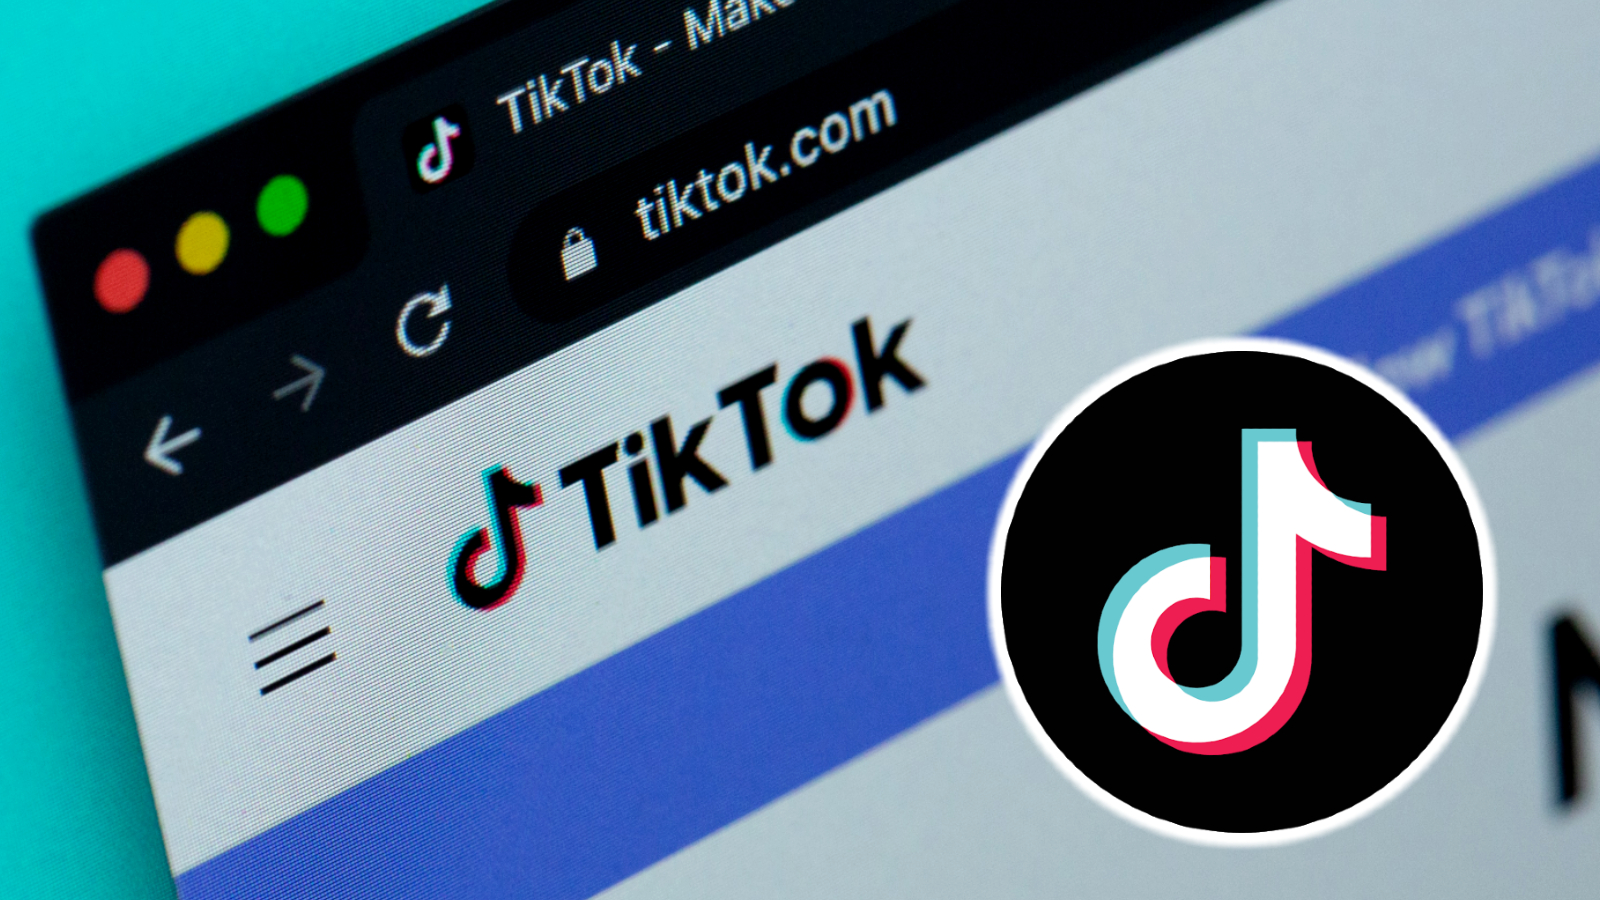 tiktok網站Tiktok徽標旁邊